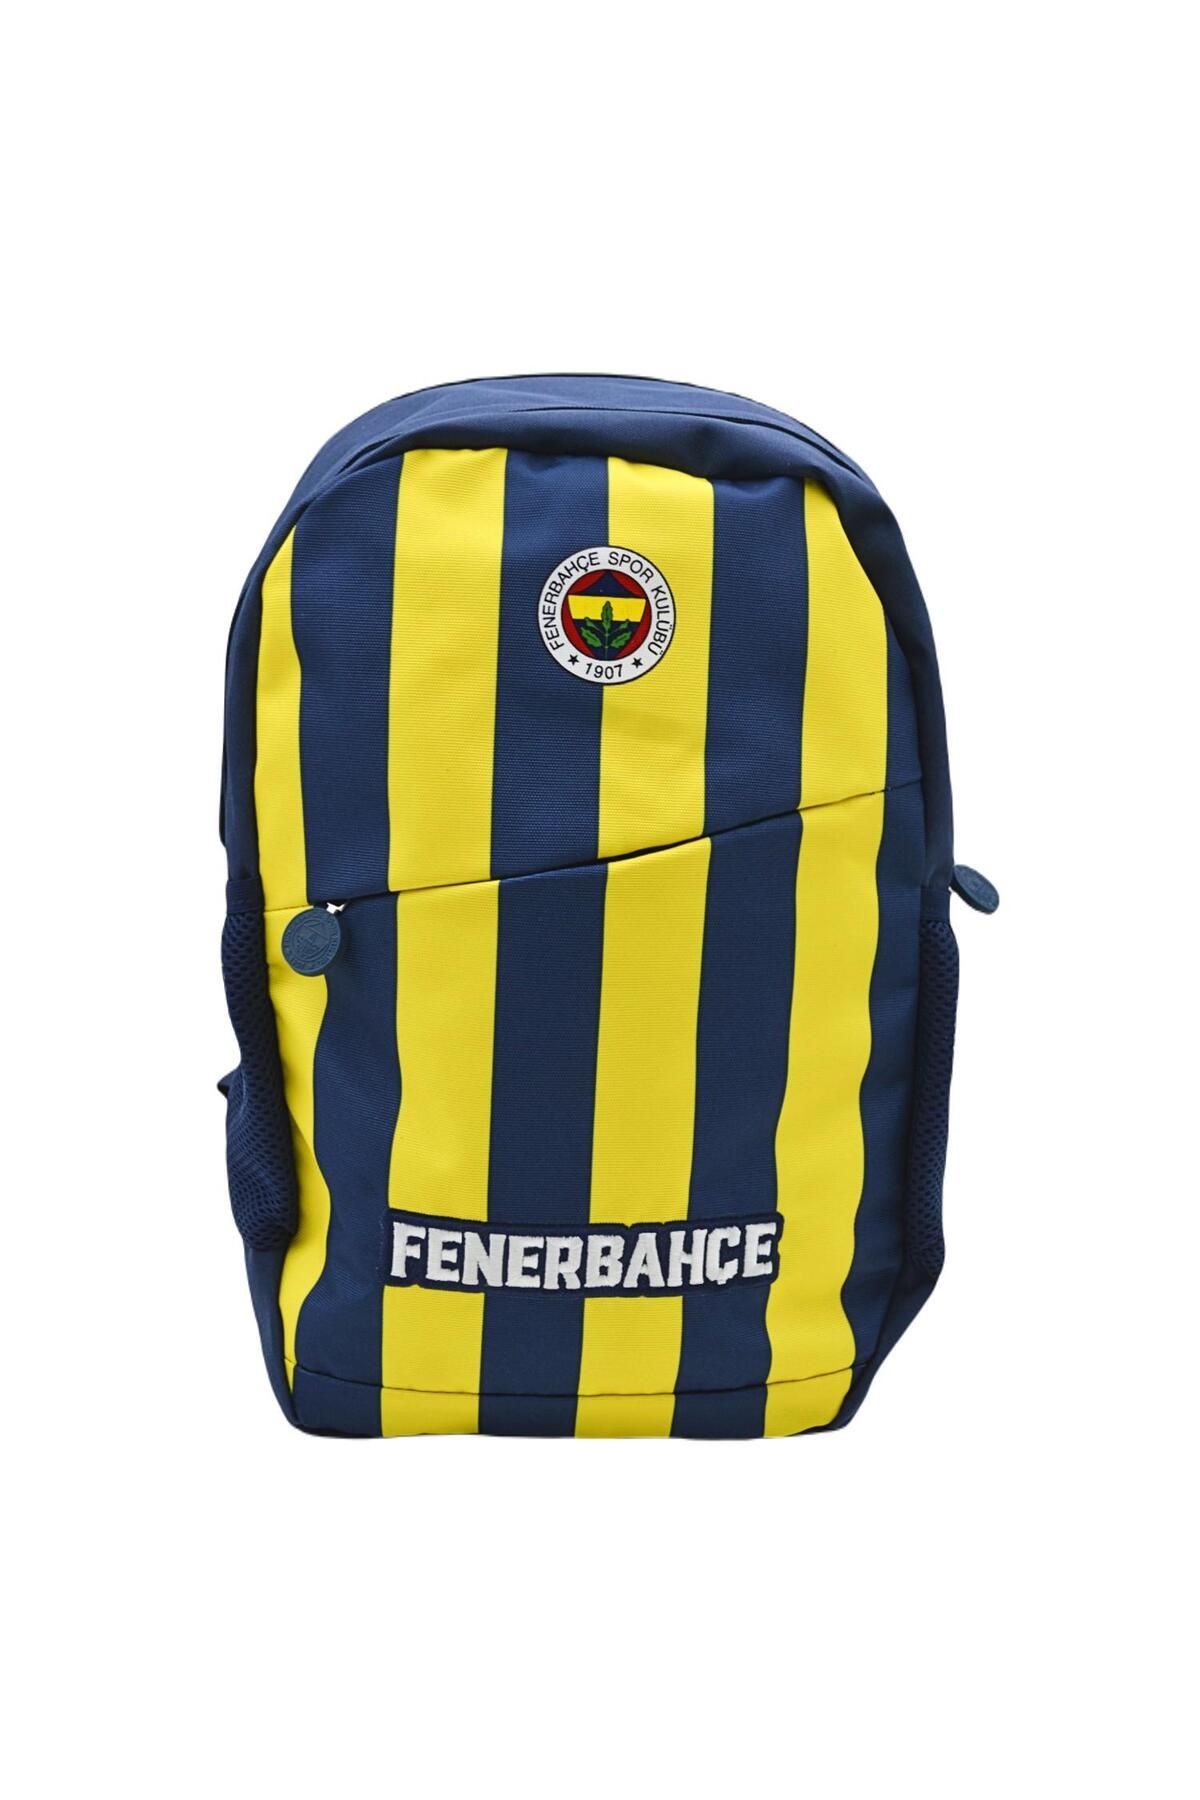 Fenerbahçe Me Çanta 3 Bölmeli Çubuk Forma Desenli Okul Sırt Çantası 24756